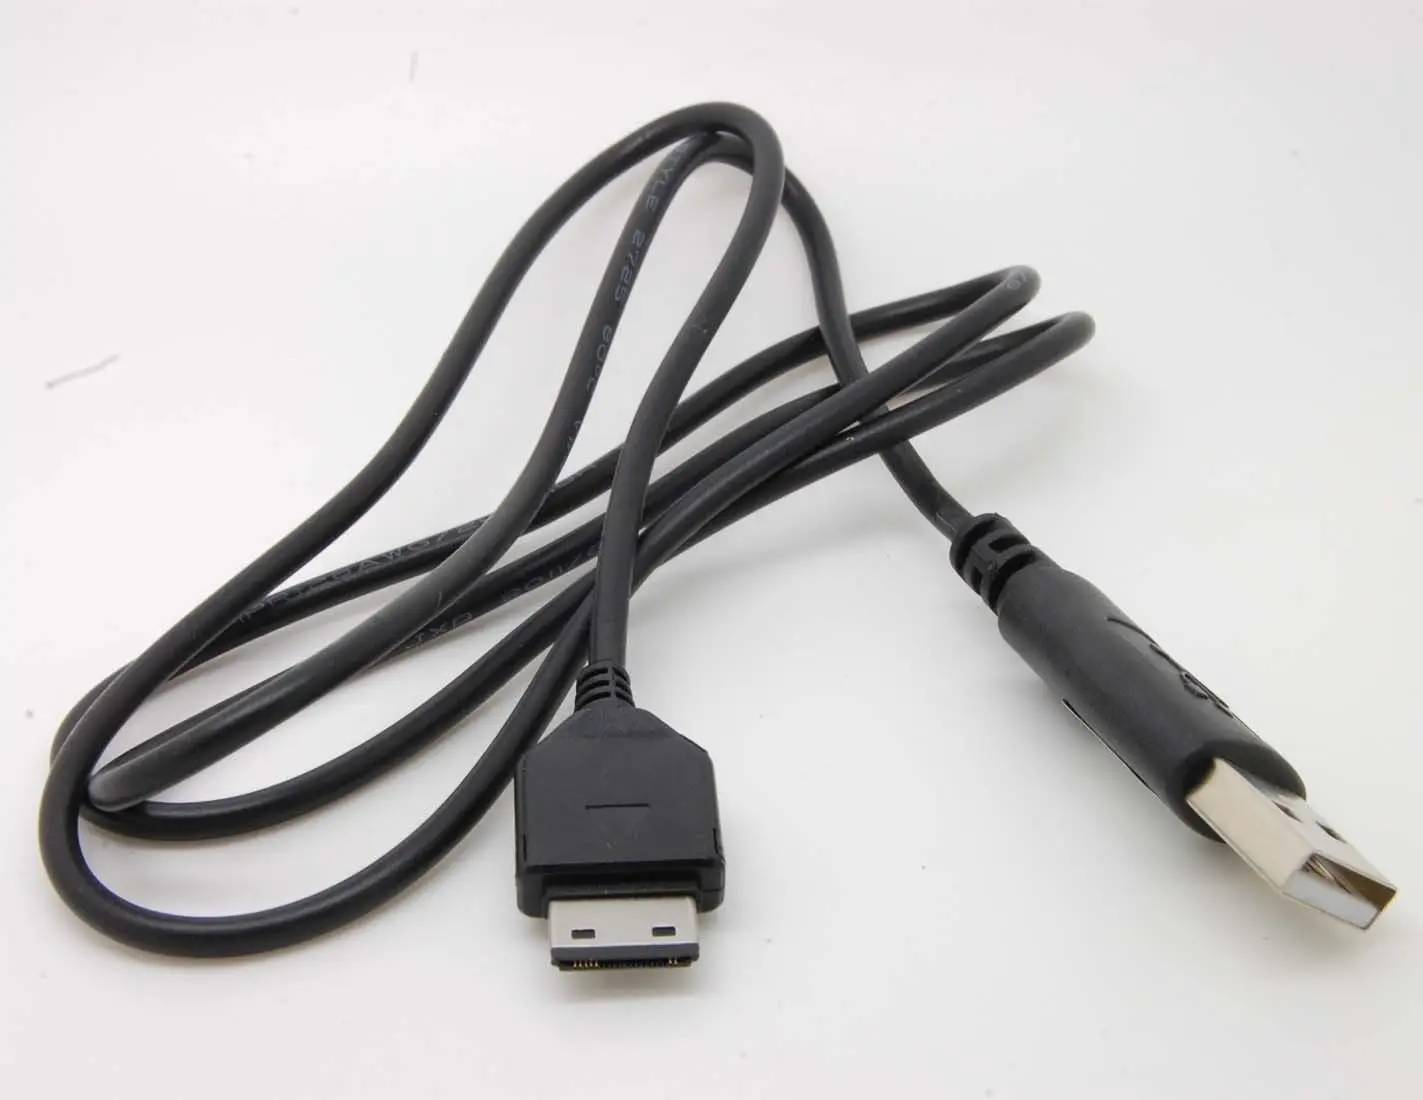 USB кабель для передачи данных и зарядки SAMSUNG SGH-I907 J700 L760 M110 T109 T119 T229 T239 T339 T349 T409 T419 T429